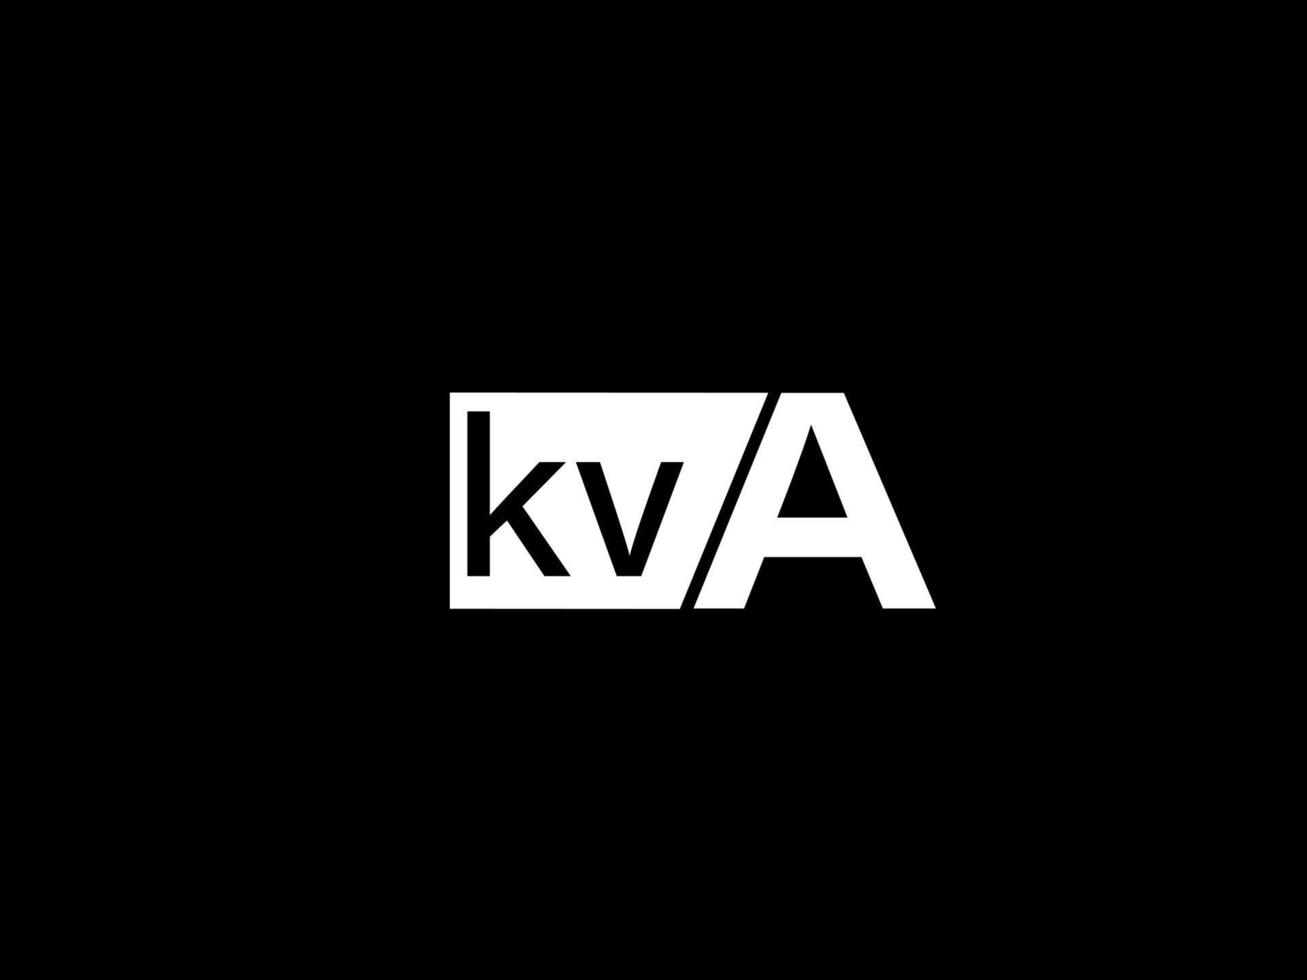 kva-Logo und Grafikdesign Vektorgrafiken, Symbole isoliert auf schwarzem Hintergrund vektor